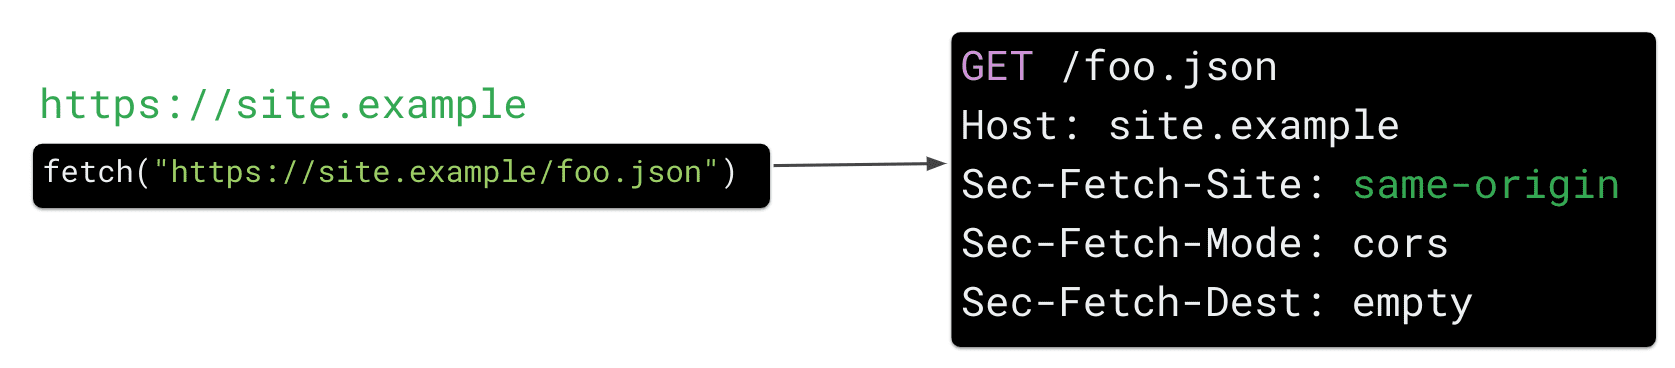 JavaScript&#39;teki https://site.example/foo.json kaynağı için https://site.example adresinden gelen bir getirme isteği, tarayıcının &quot;Sec Fetch-Site: same-origin&quot; HTTP istek başlığını göndermesine neden olur.